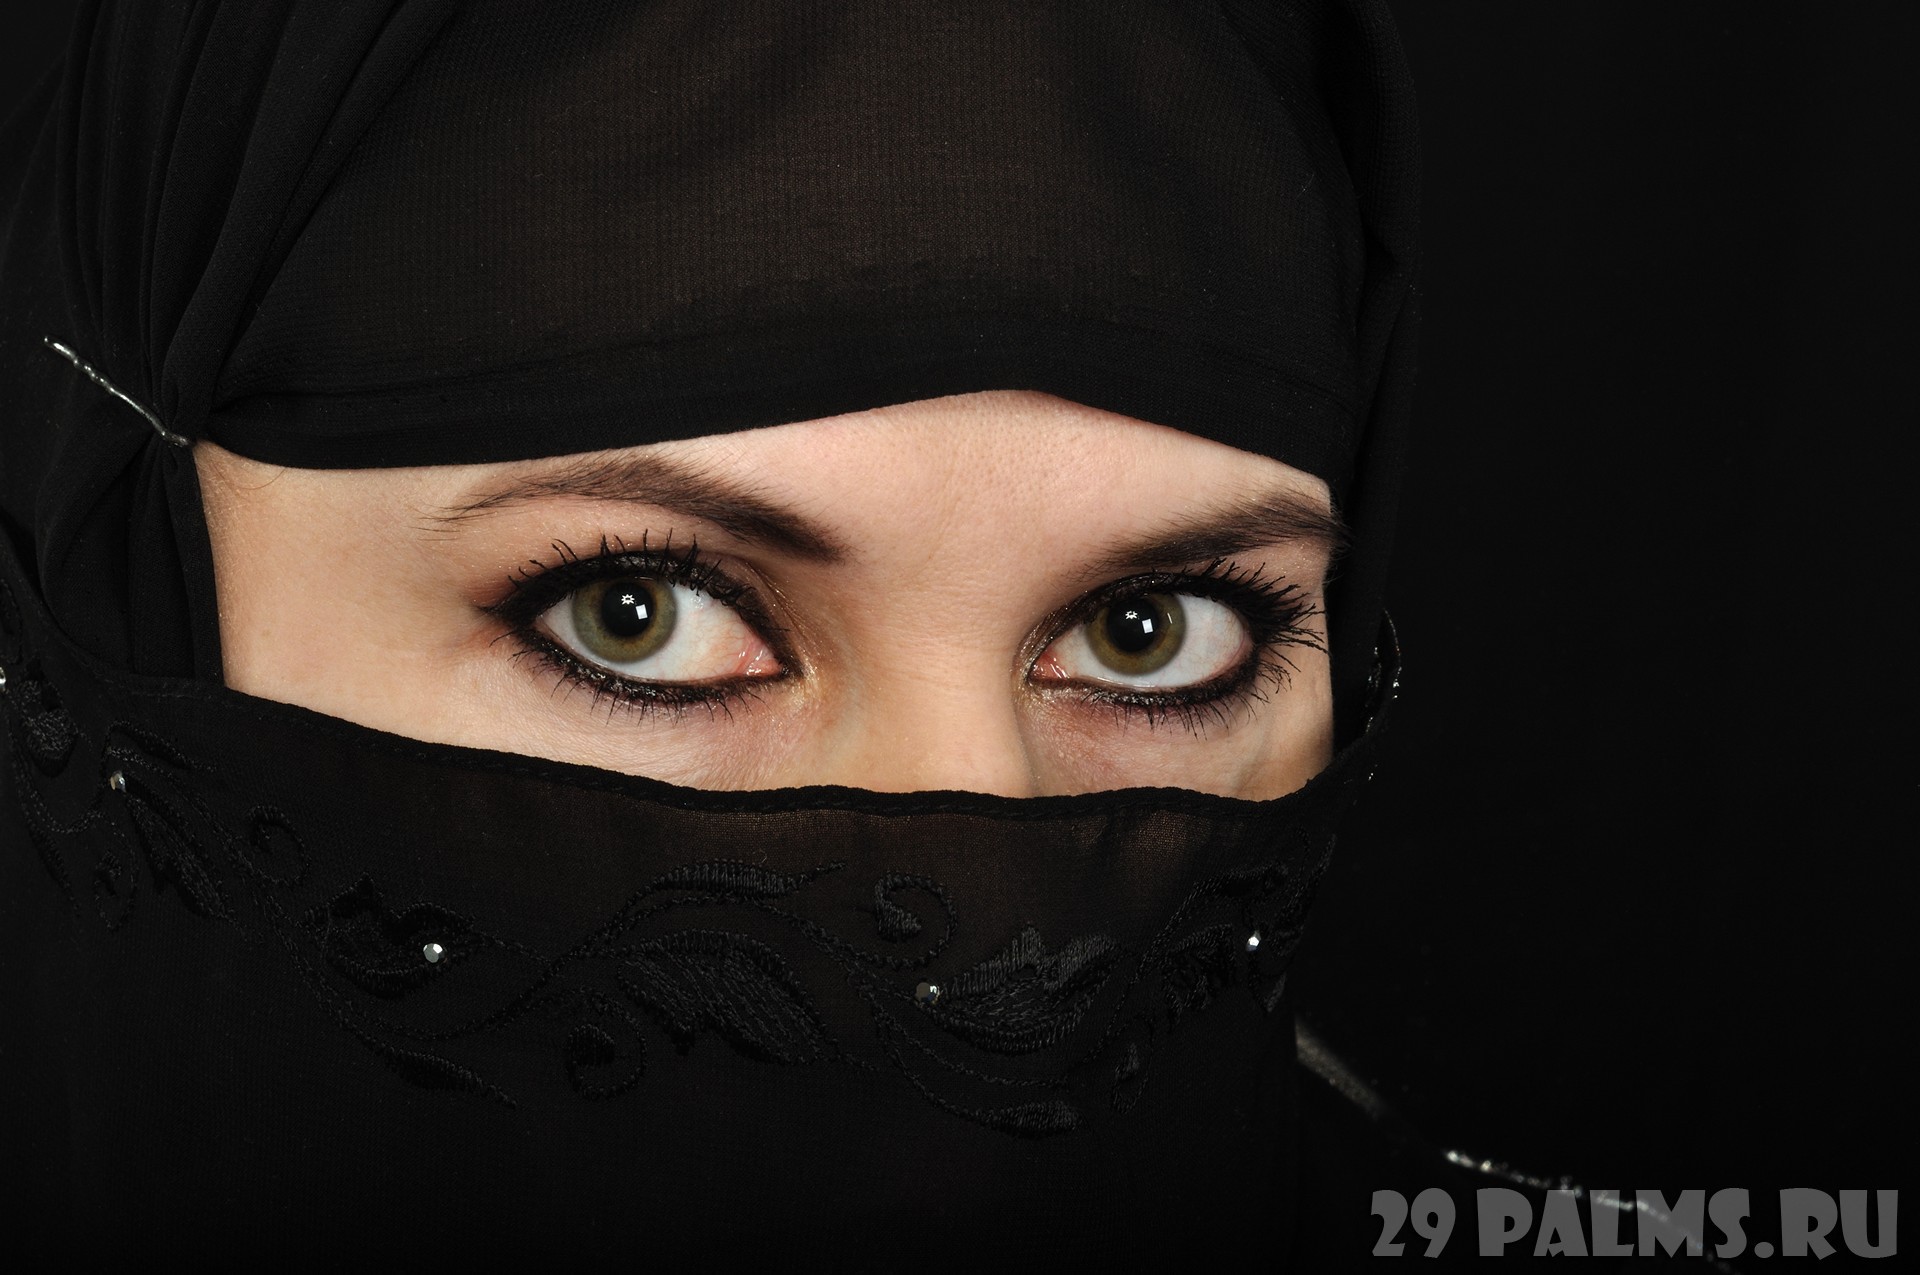 Паранджа 6. Арабские девушки. Красивые арабские девушки. Женщина в парандже. Арабские глаза девушек.